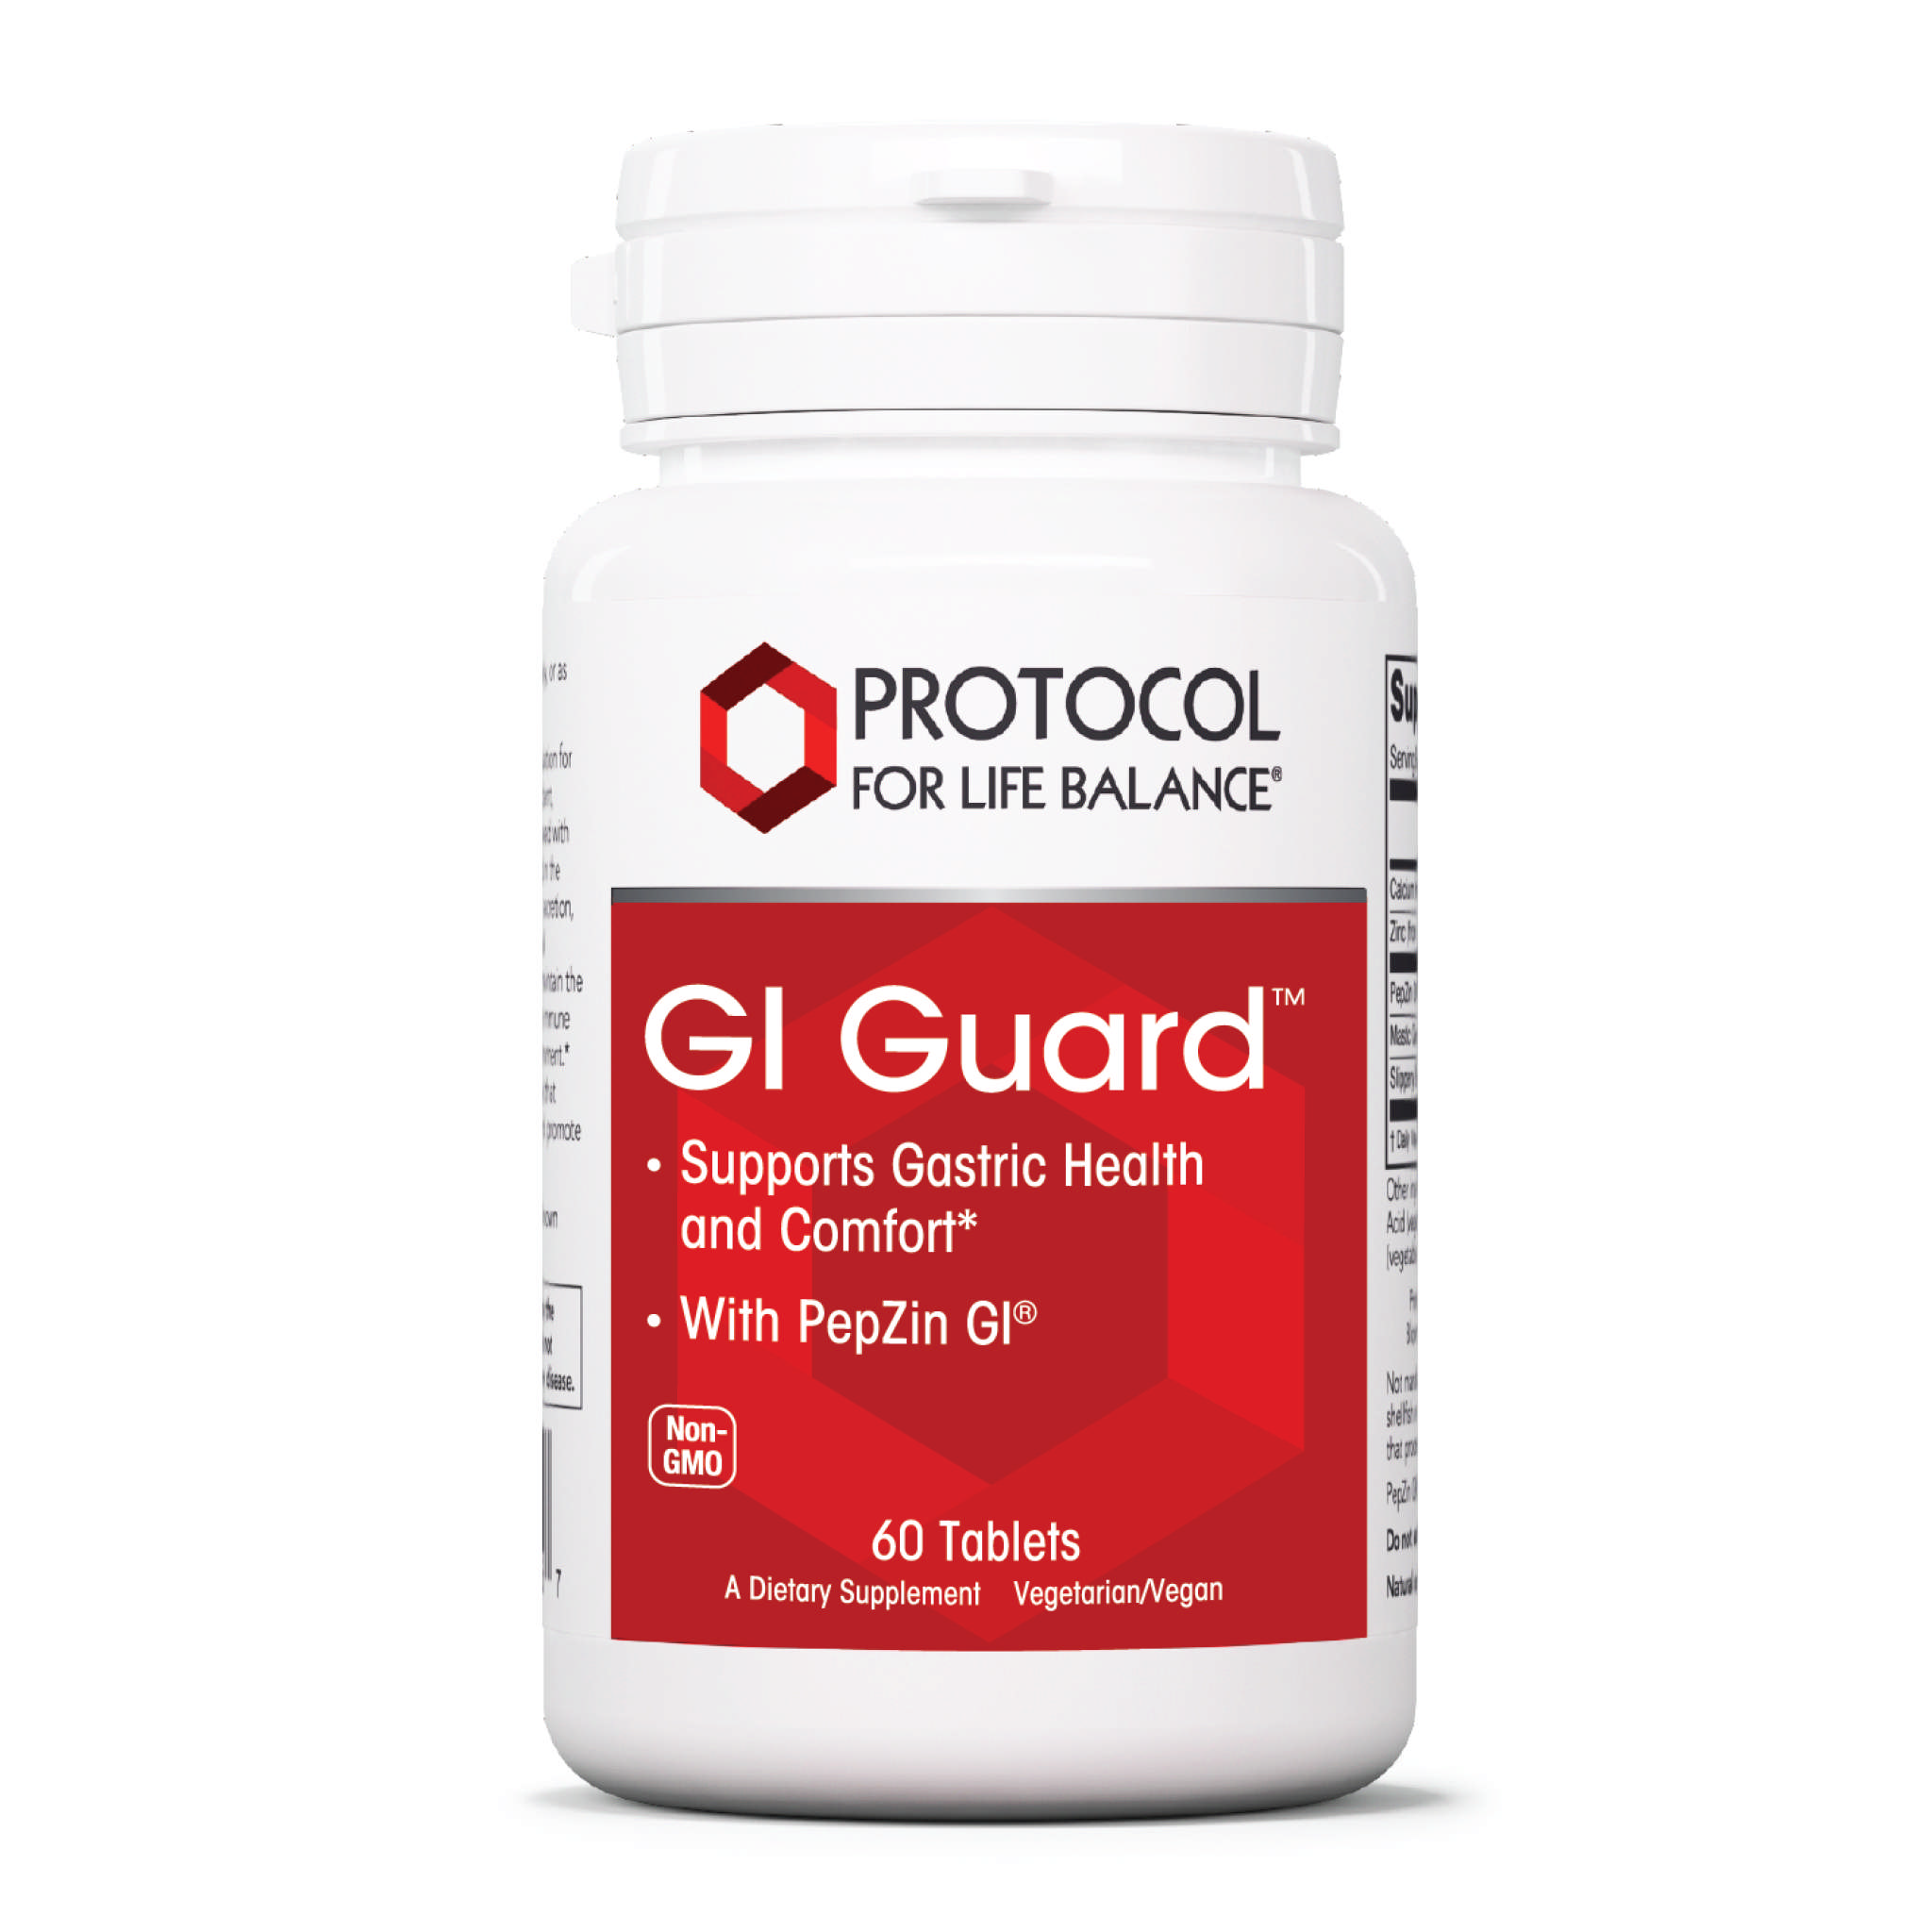 Protocol For Life Balance - Gi Guard Am tab